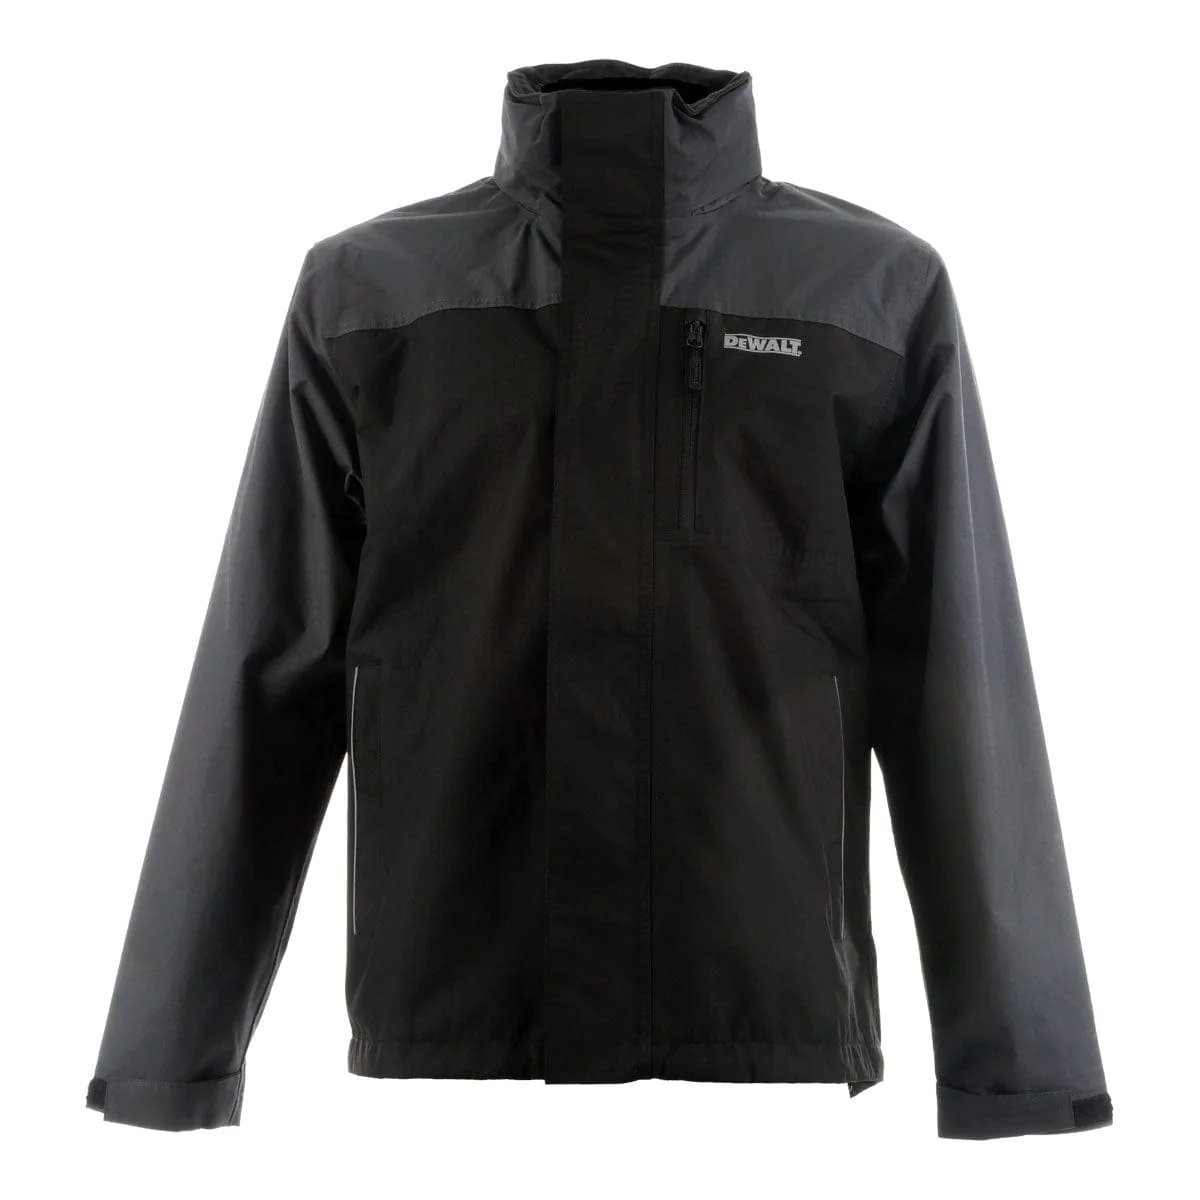 DeWalt Storm Waterproof Jacket, Black/Grey